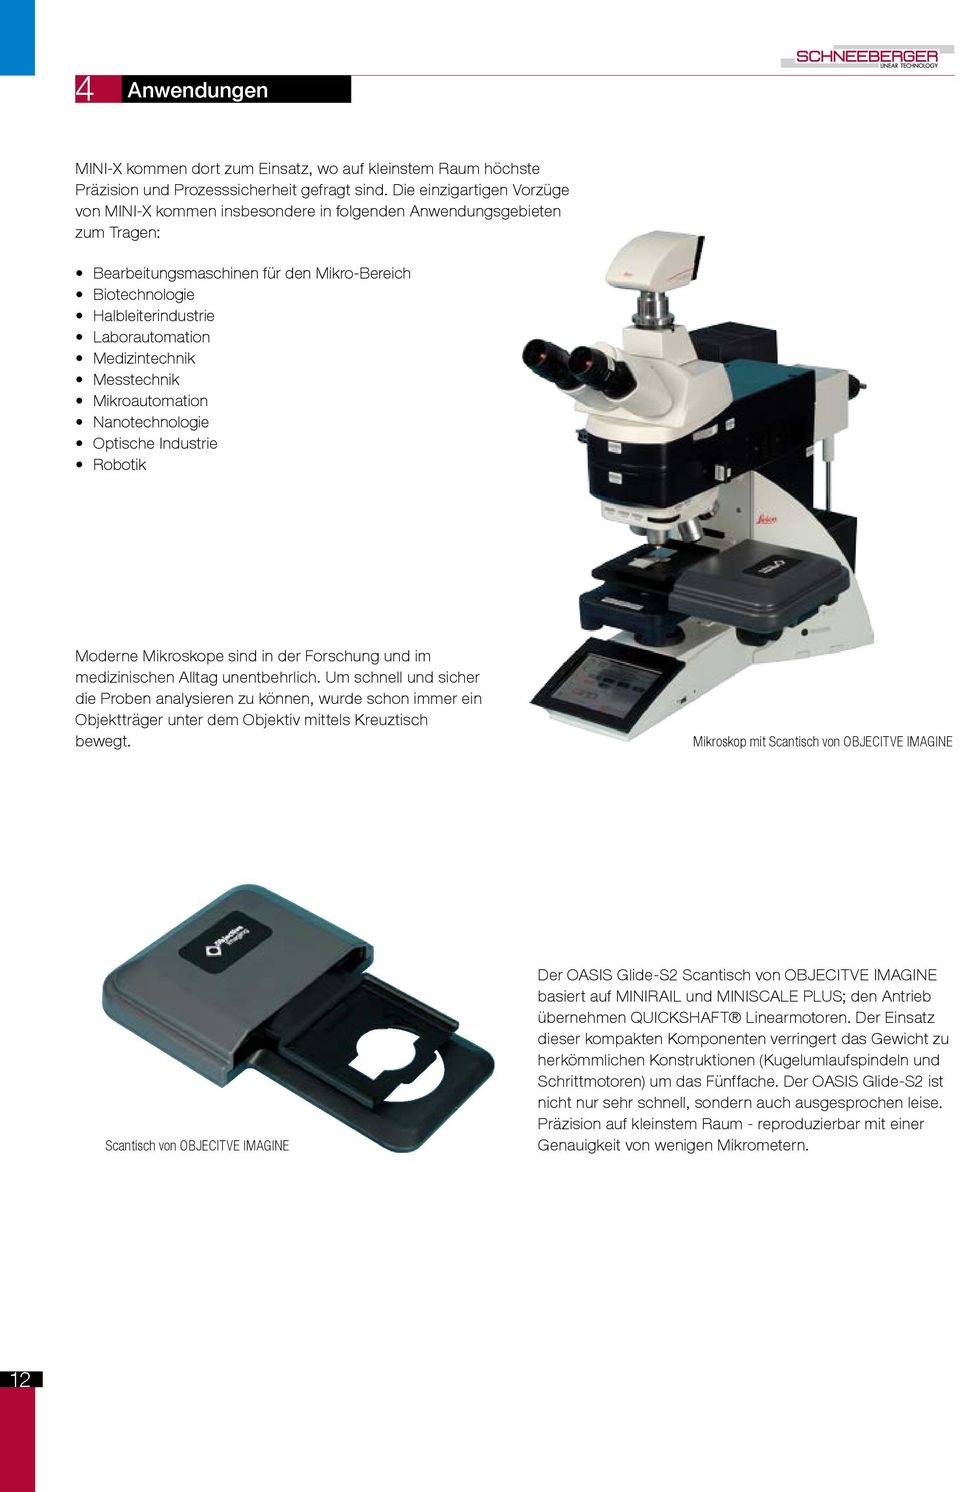 Medizintechnik Messtechnik Mikroautomation Nanotechnologie Optische Industrie Robotik Moderne Mikroskope sind in der Forschung und im medizinischen Alltag unentbehrlich.